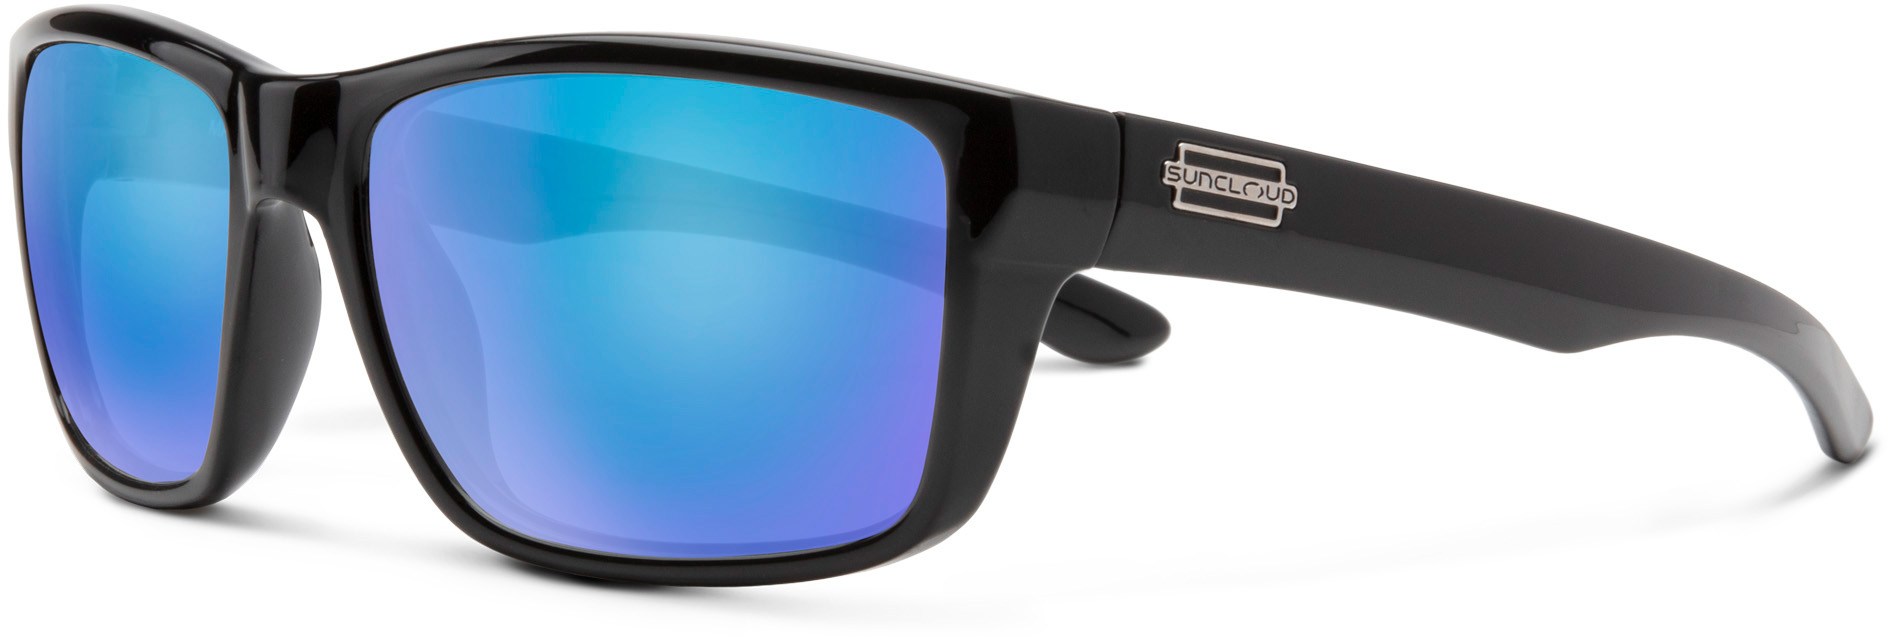 цена Поляризованные солнцезащитные очки Mayor Suncloud, черный